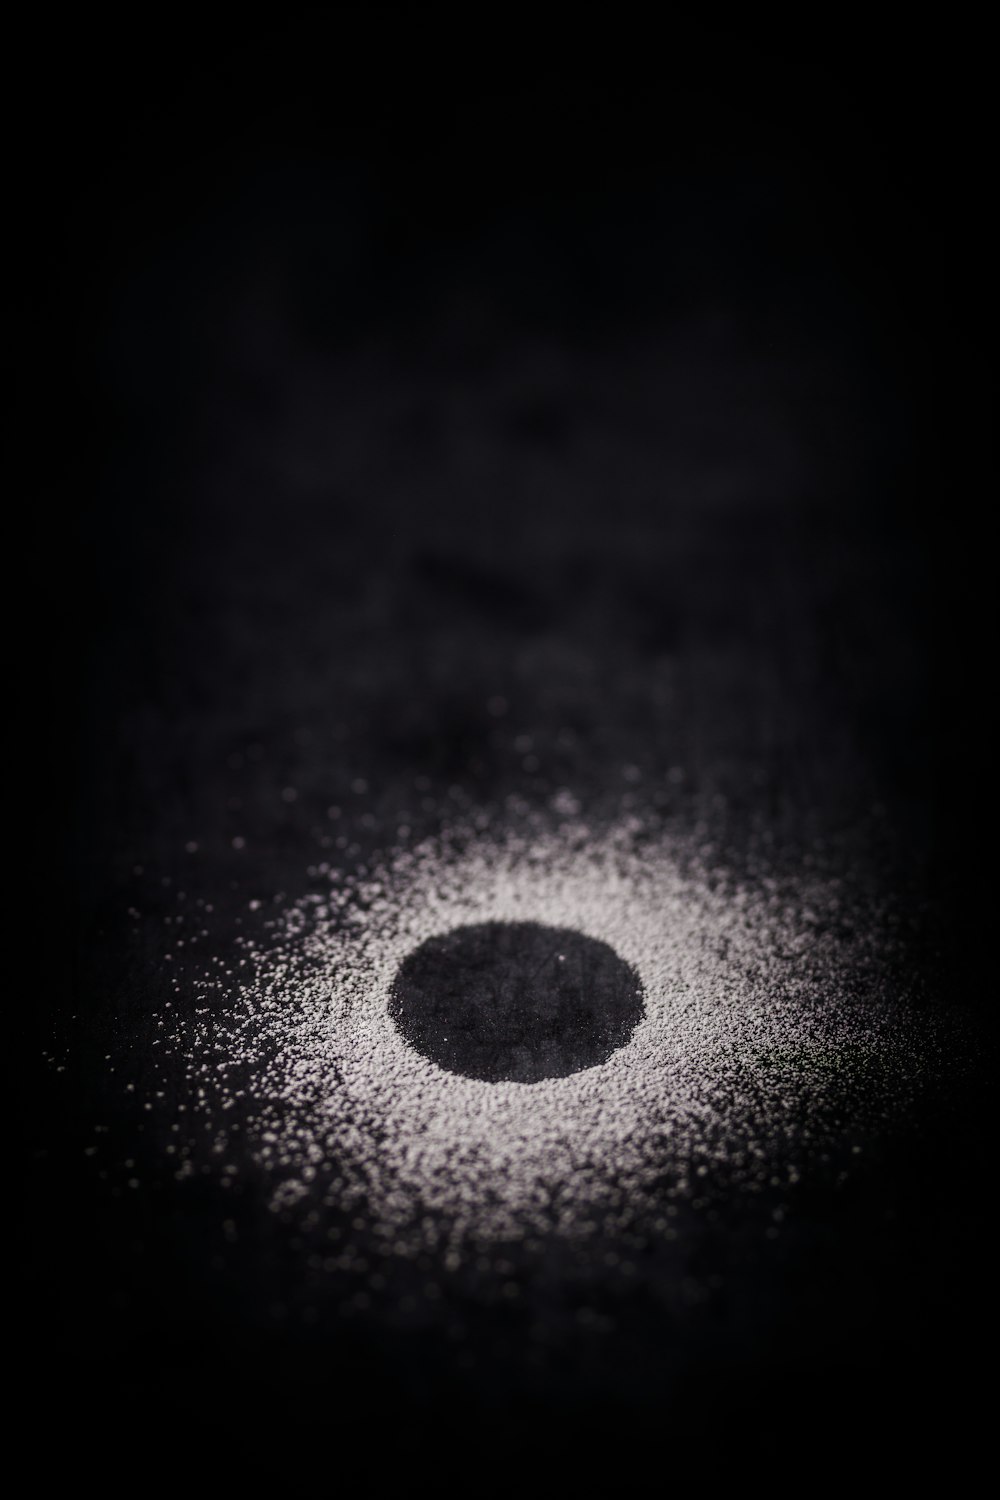 Una foto en blanco y negro de un objeto redondo